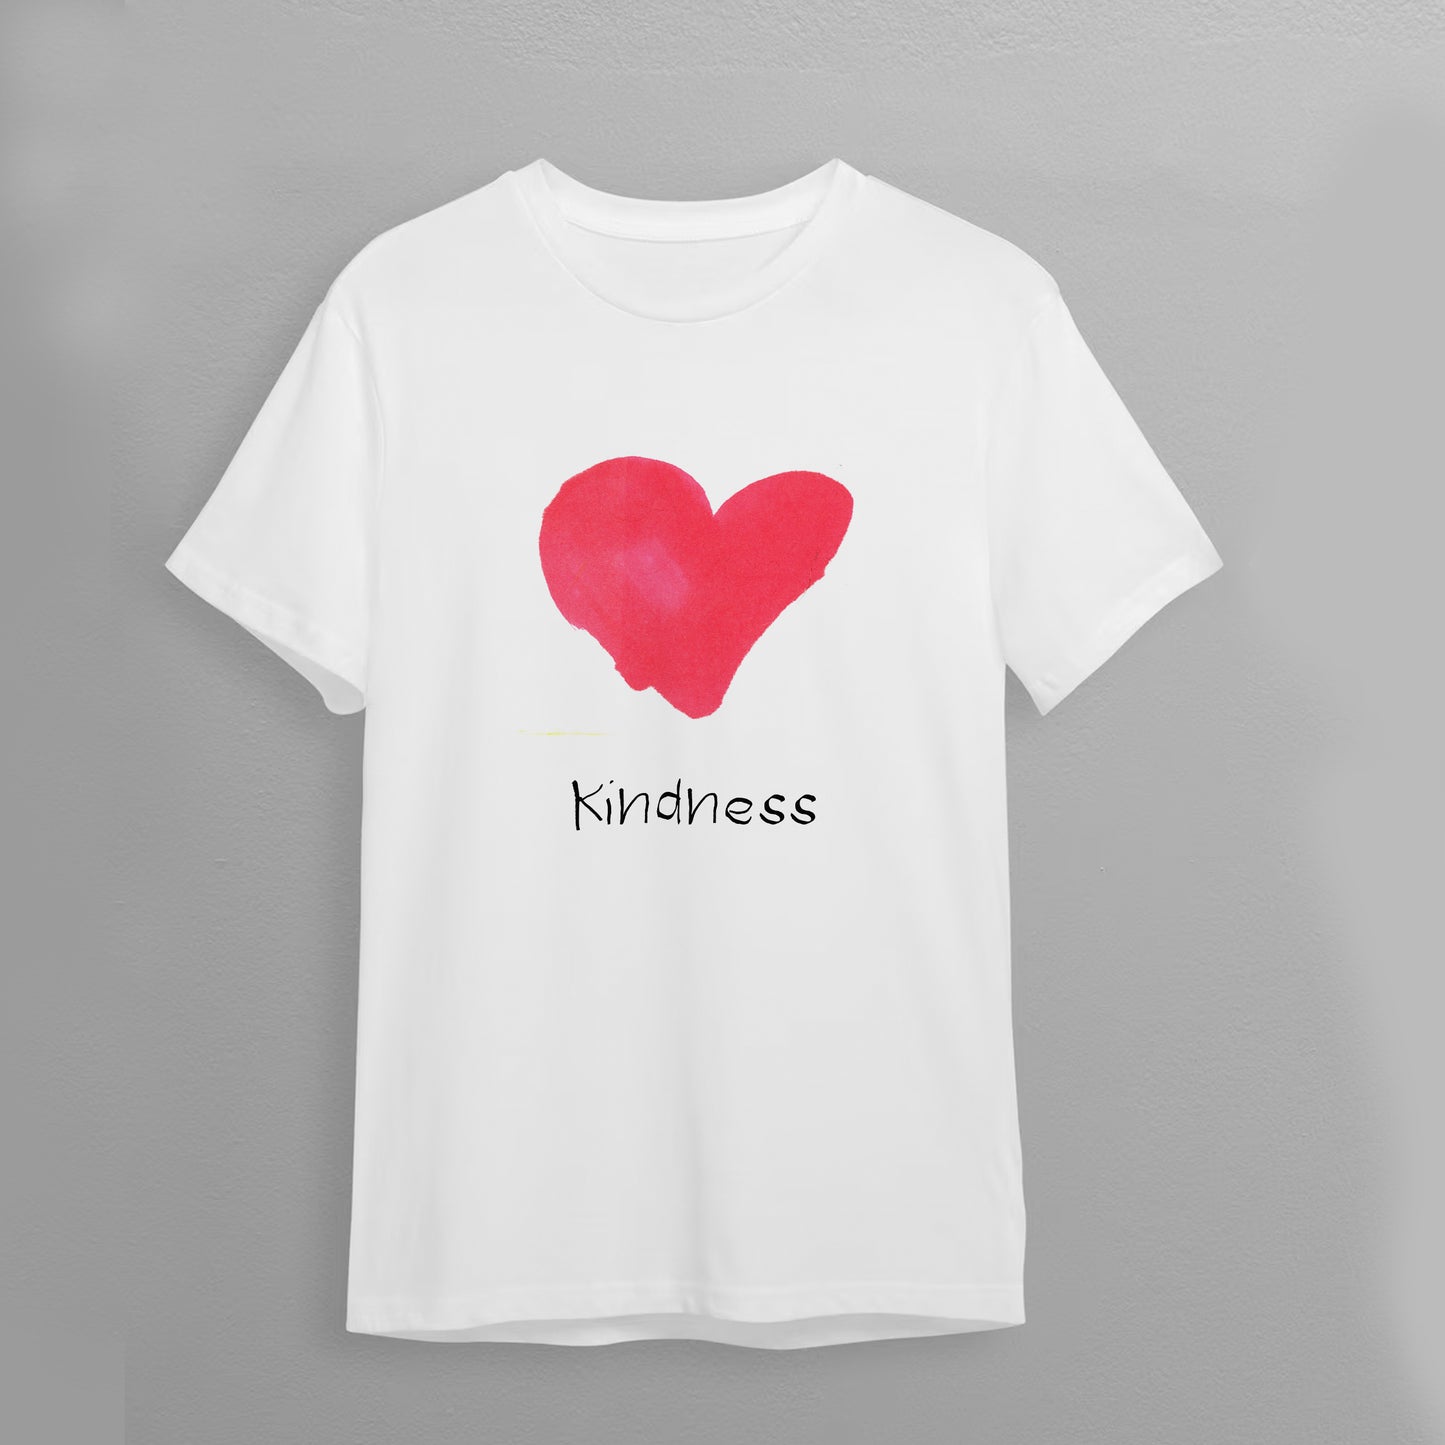 T-Shirt "Kindness"